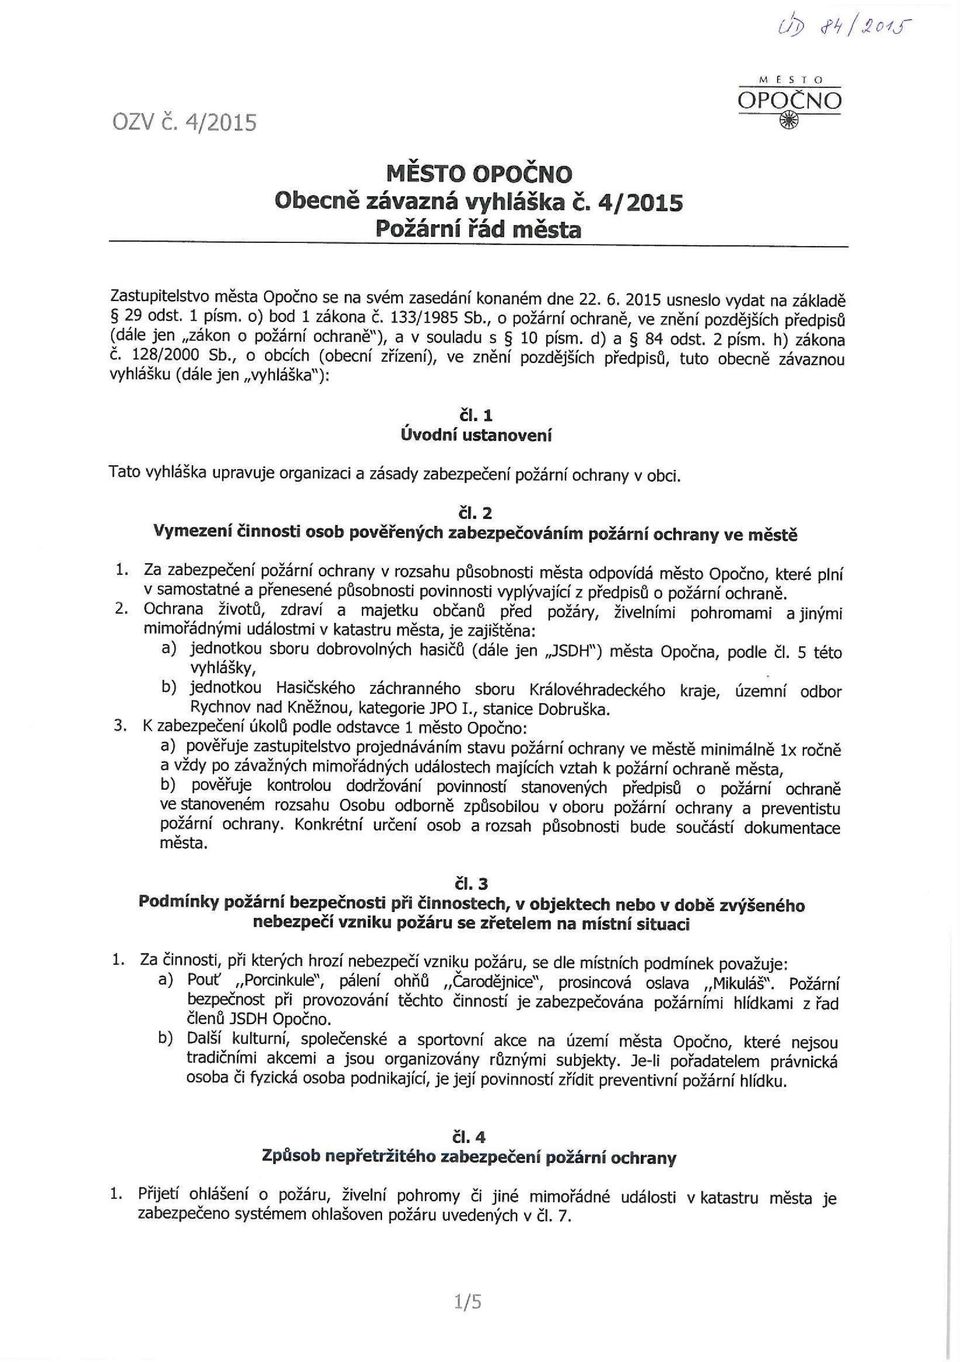 , o obcích (obecní zřízení), ve znění pozdějších předpisů, tuto obecně závaznou vyhlášku (dále jen vyhláška"): čl.